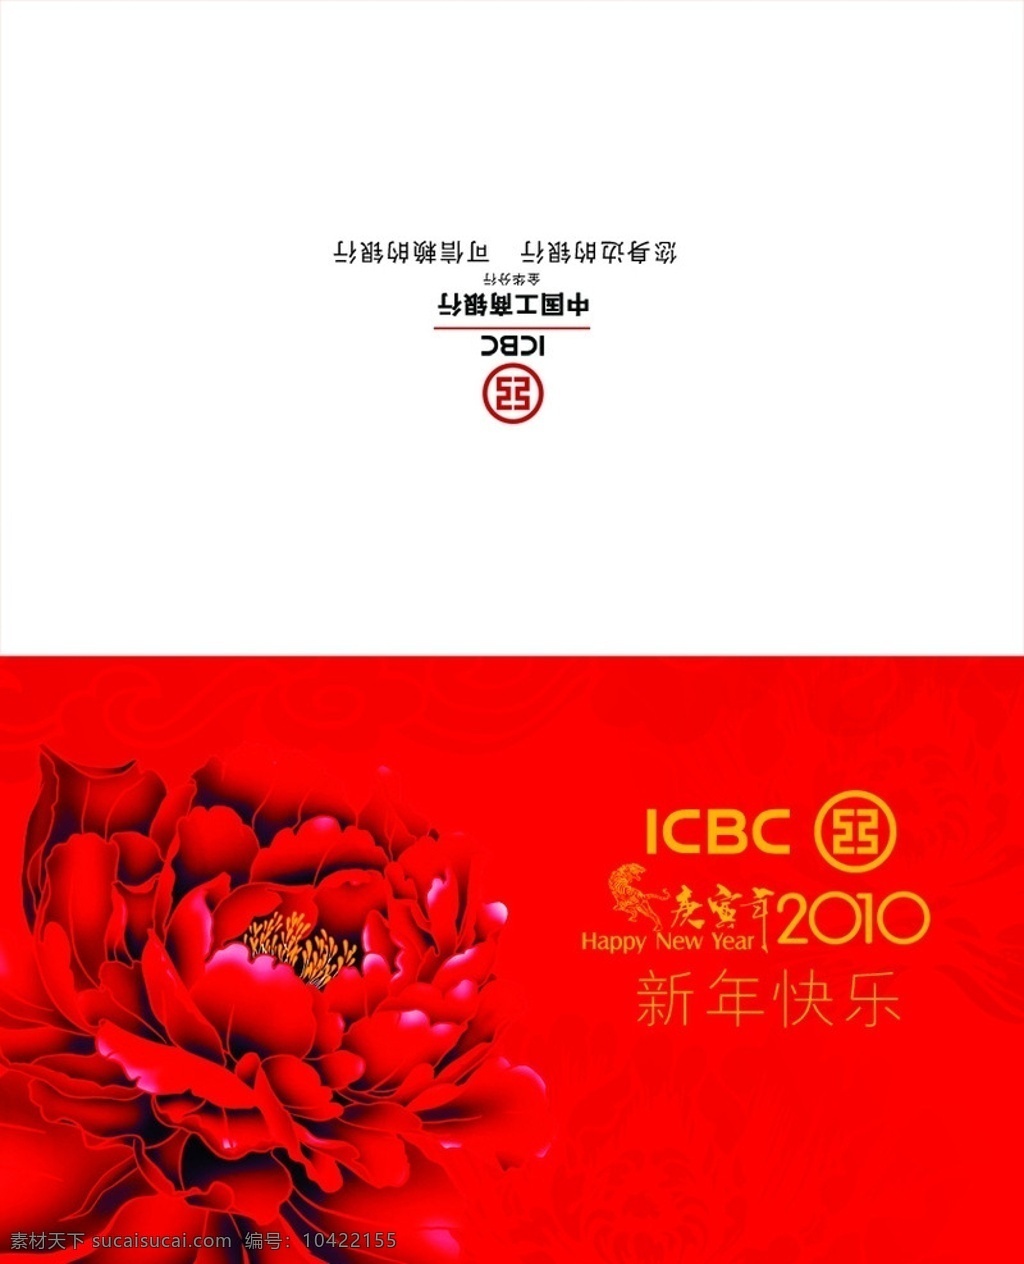 工行 2010 贺卡 牡丹 logo 虎年 春节 节日素材 源文件